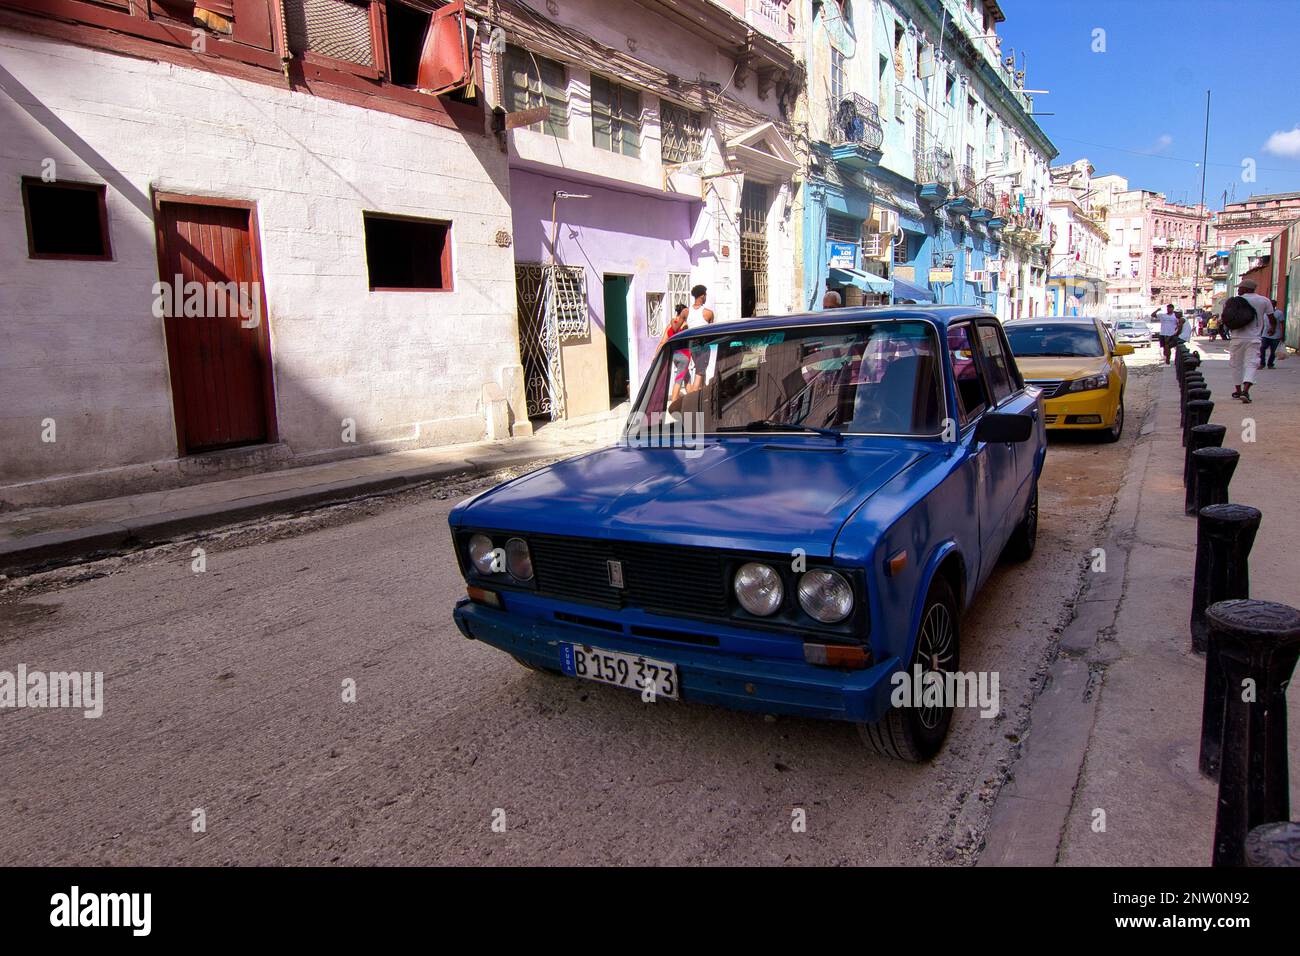 Ein blauer Oldtimer in einer Gasse mit alten, bunten Gebäuden in Havanna, Kuba. Stockfoto